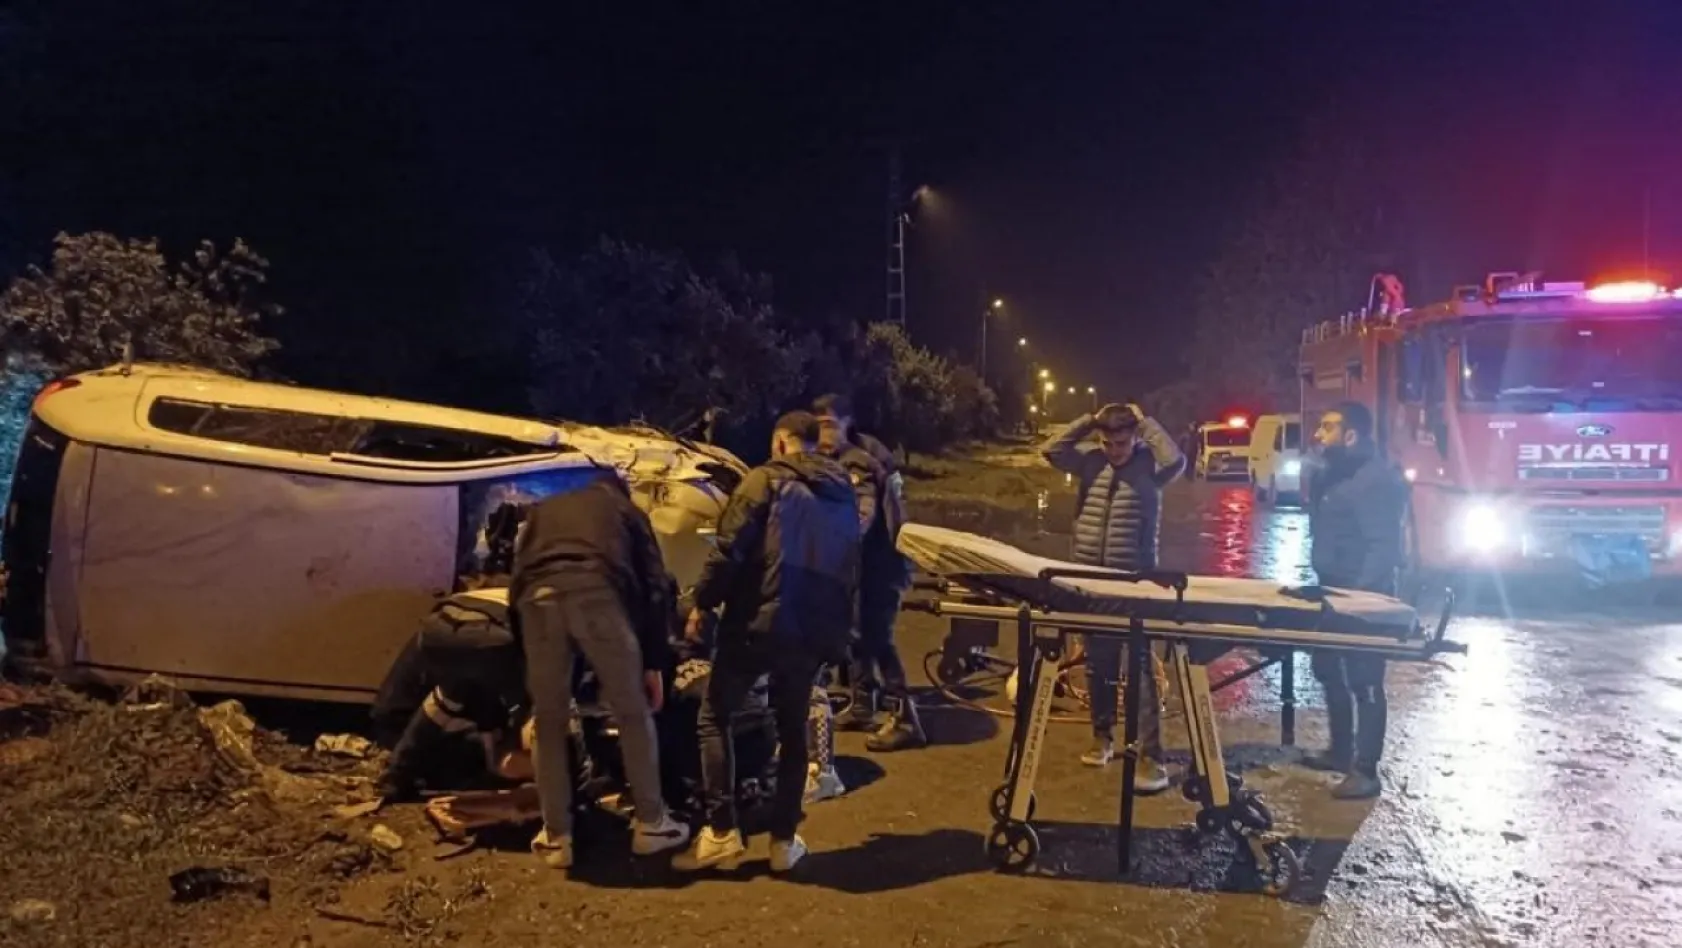 Erzin'de trafik kazası: 2 yaralı